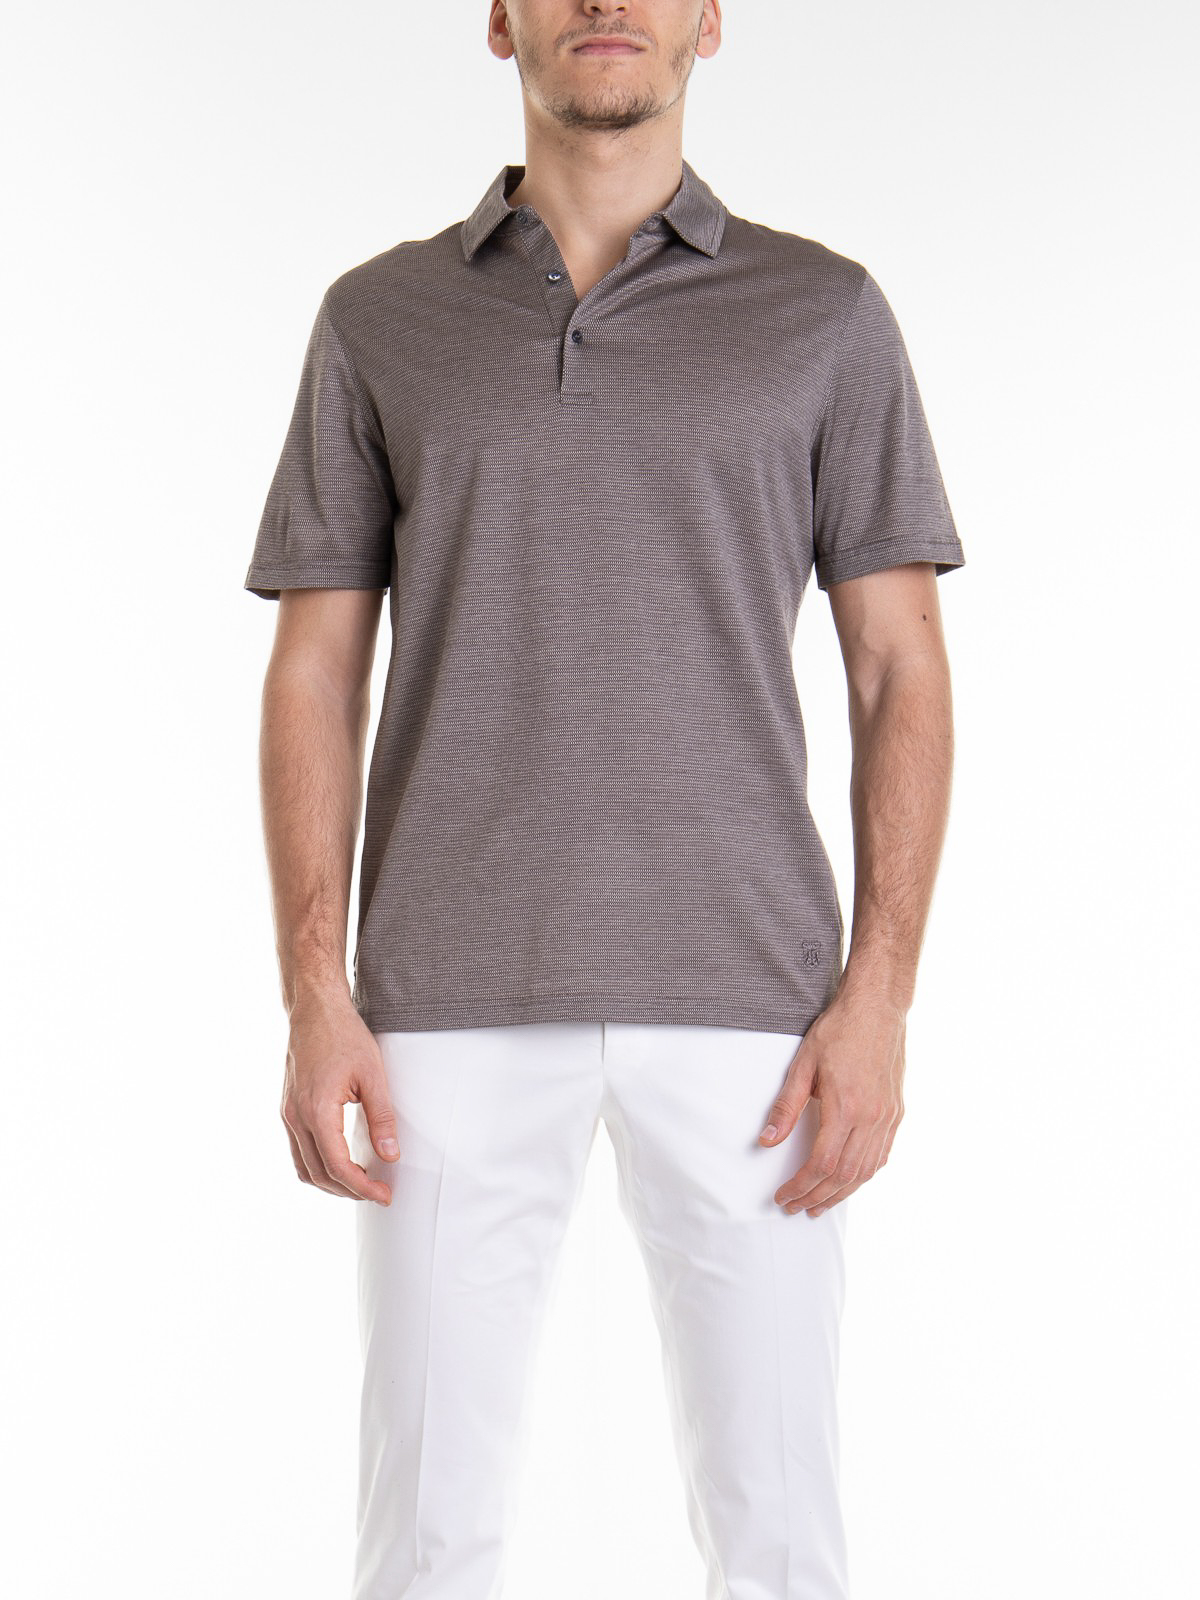 ポロシャツ Corneliani - ポロシャツ - ブラウン - 91G5203125015035